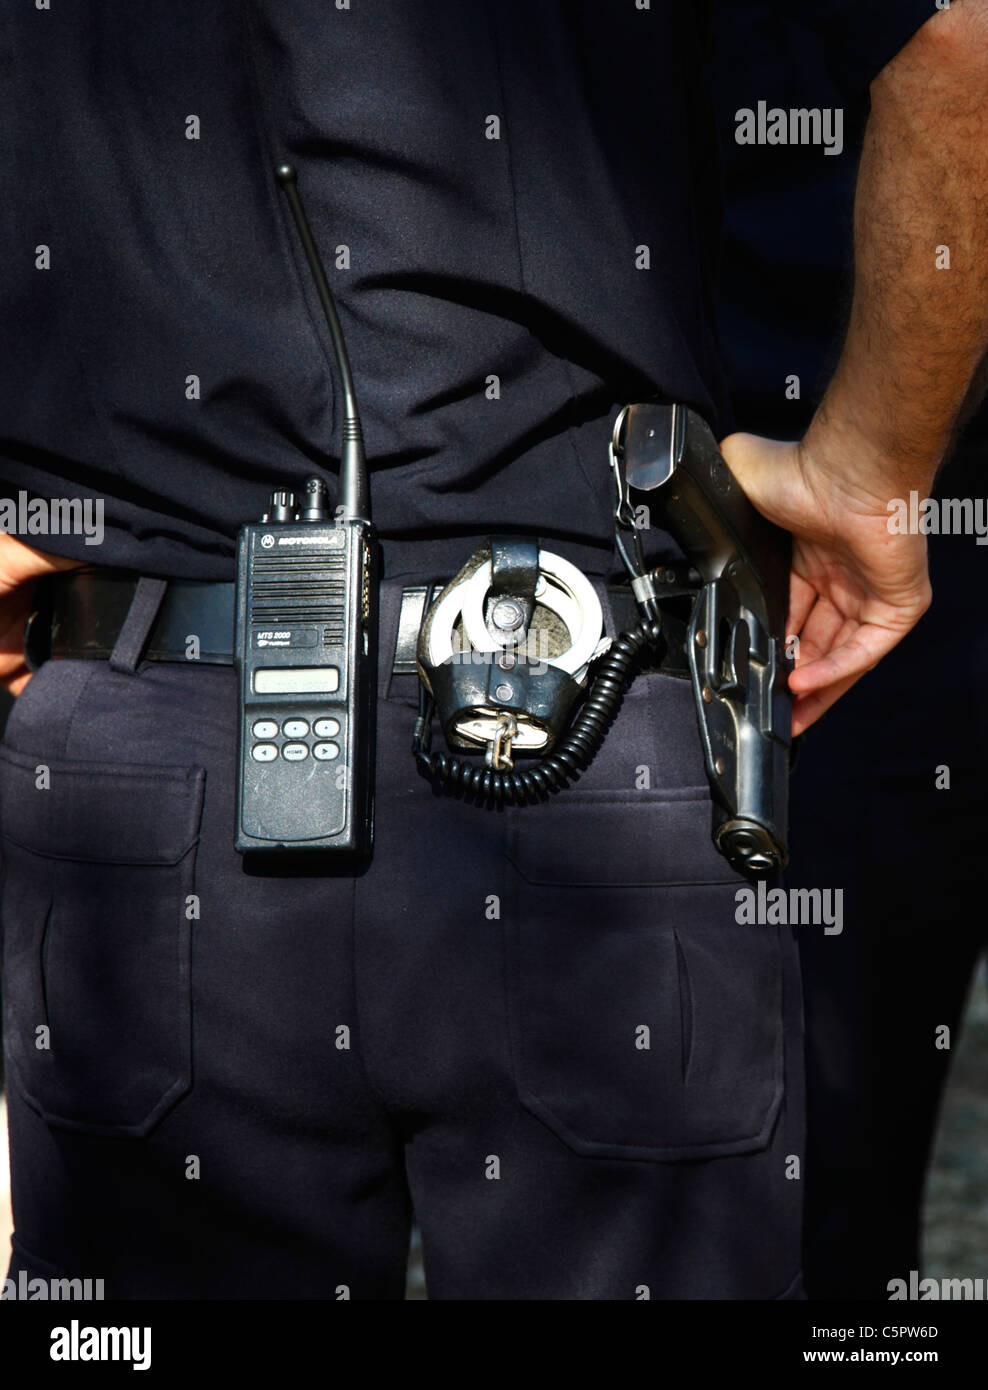 Vista trasera de un policía israelí con un par de esposas de una pistola y un transmisor de radio portátil en su cinturón Foto de stock